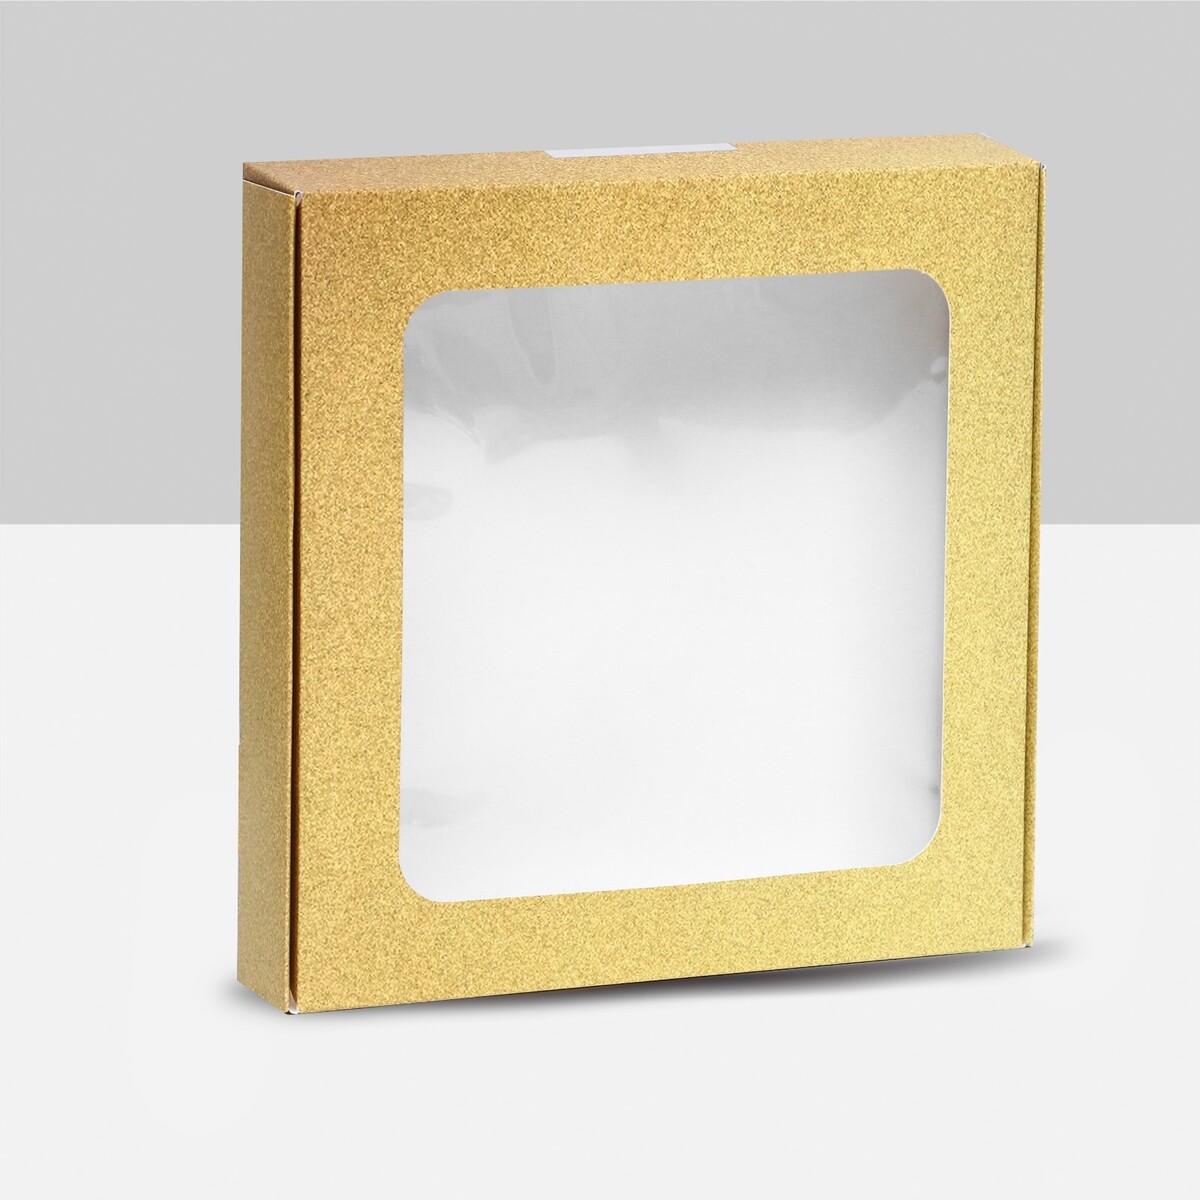 Коробка самосборная, с окном, золотая, 16 х 16 х 3 см коробка самосборная с окном сиреневая 13 х 13 х 3 см